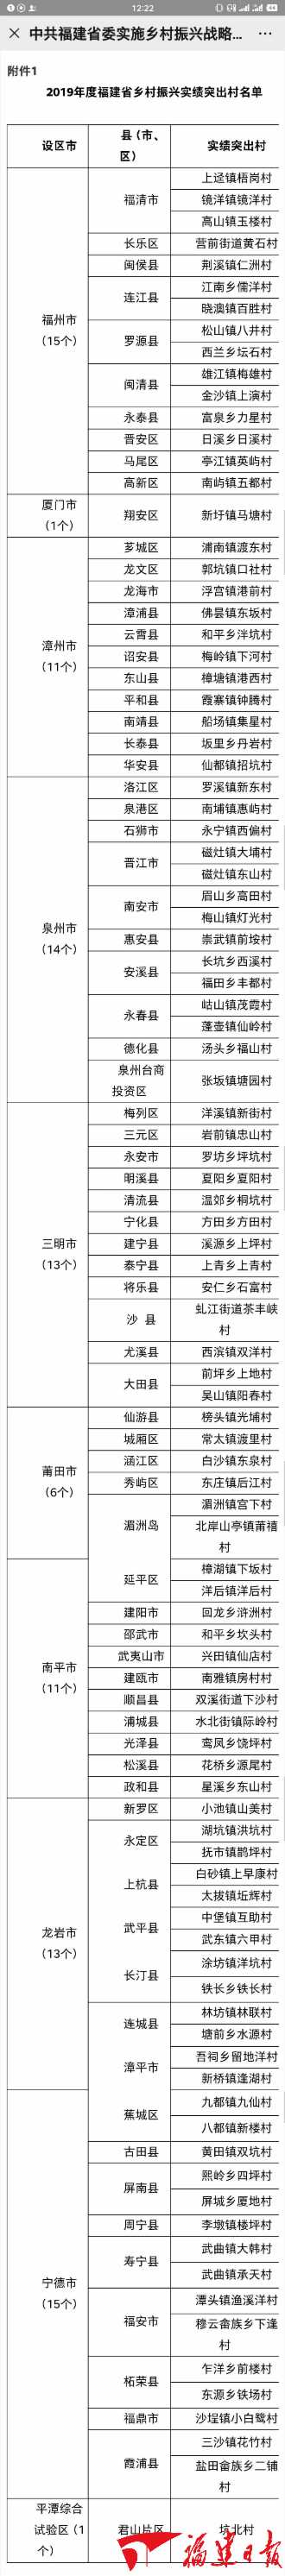 福建省乡村振兴重点特色乡（镇）、实绩突出村名单发布